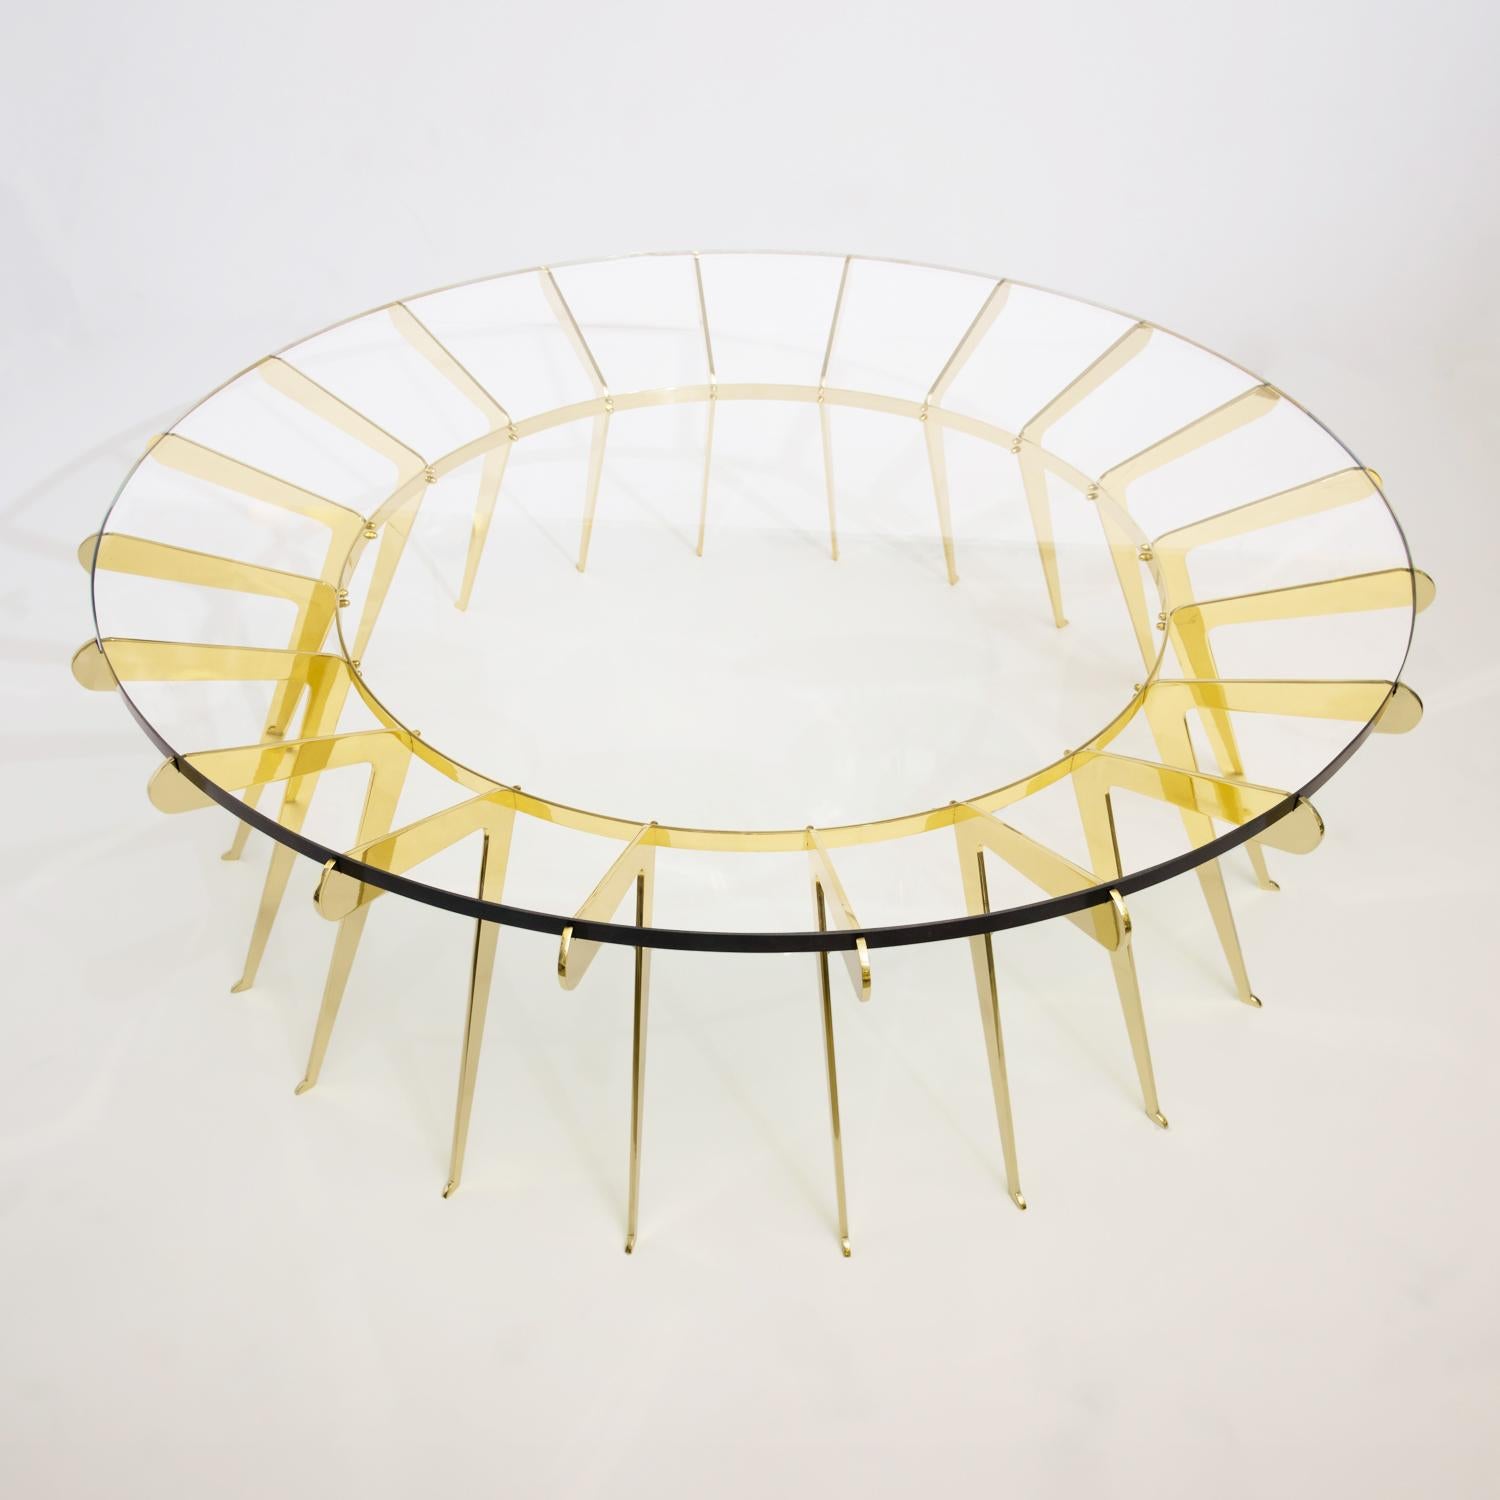 Der Tisch Solare spielt mit dem Konzept der Stärke in Zahlen, bei dem zahlreiche zart gestaltete Messingbeine zusammenkommen, um eine dicke Klarglasplatte zu halten. Abgebildet in poliertem Messing mit einem Durchmesser von